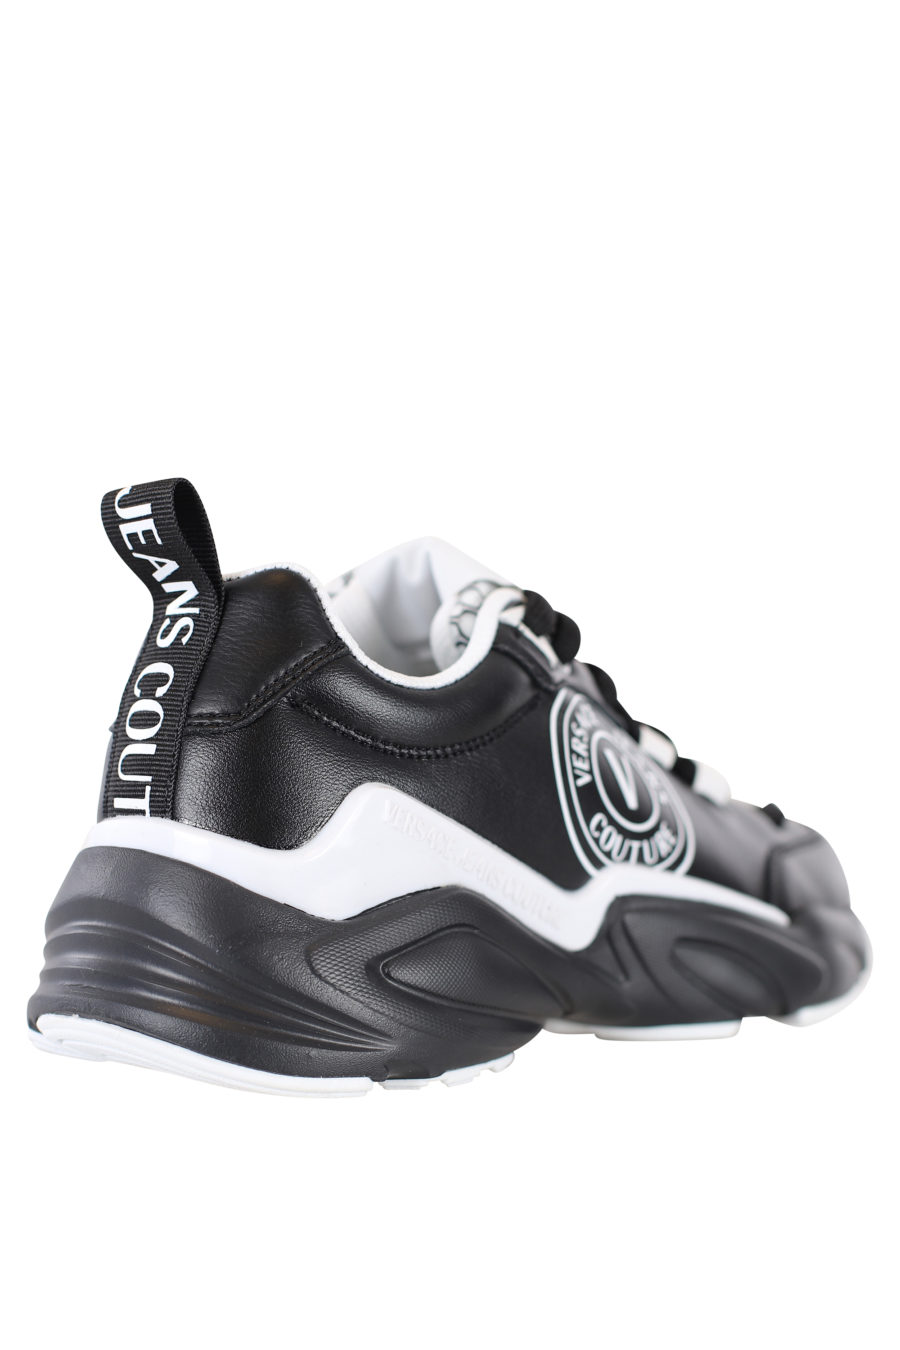 Zapatillas negras con detalles blancos "Wave" - IMG 2180